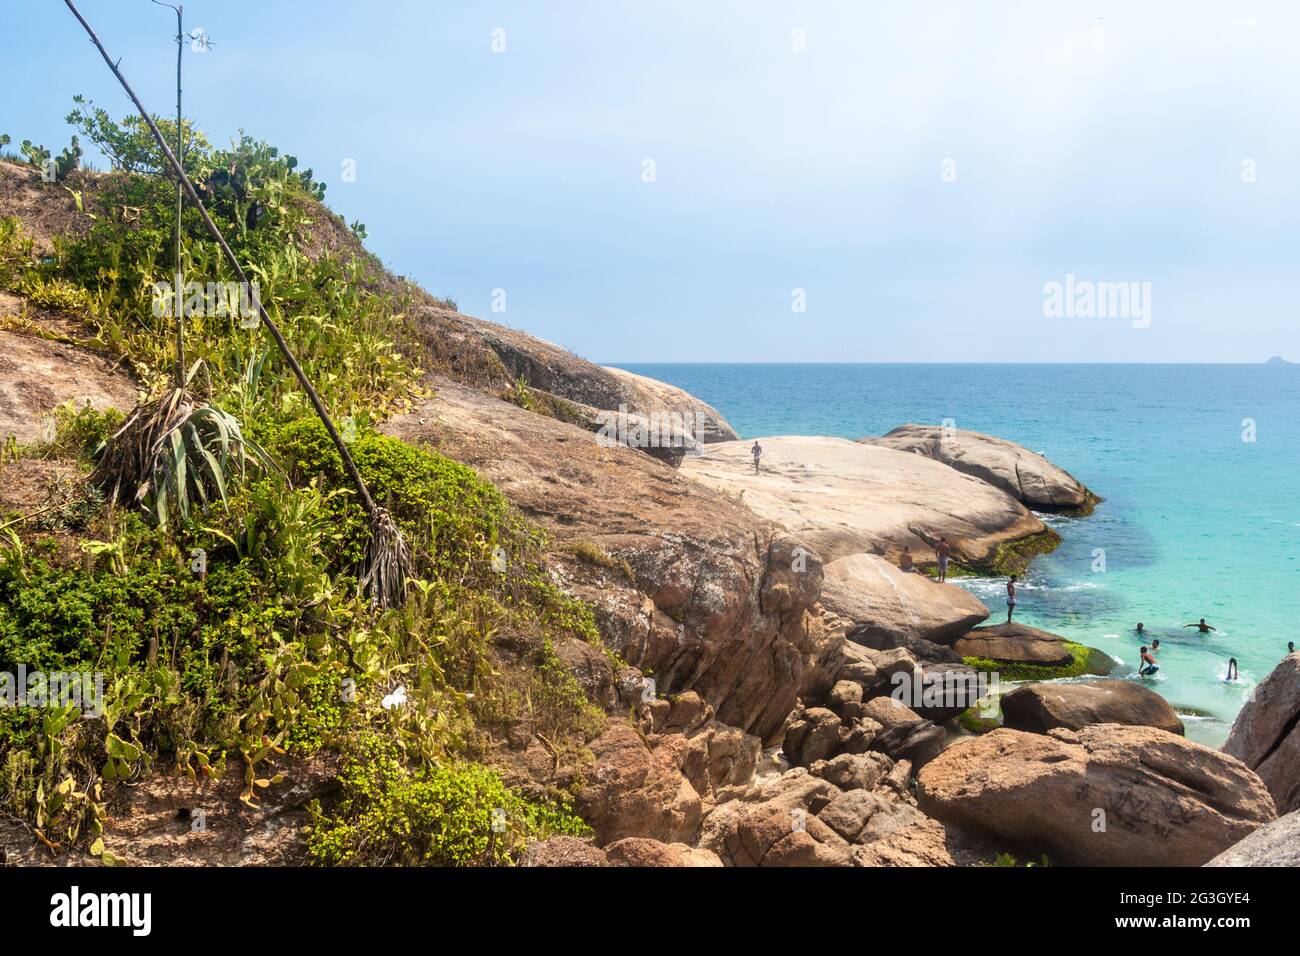 RIO DE JANEIRO, BRASILIEN - 27. JANUAR 2015: Am Fels Pedra do Arpoador zwischen den Stränden von Ipanema und der Papaana in Rio de Janeiro schwimmen die Menschen im Meer. Stockfoto